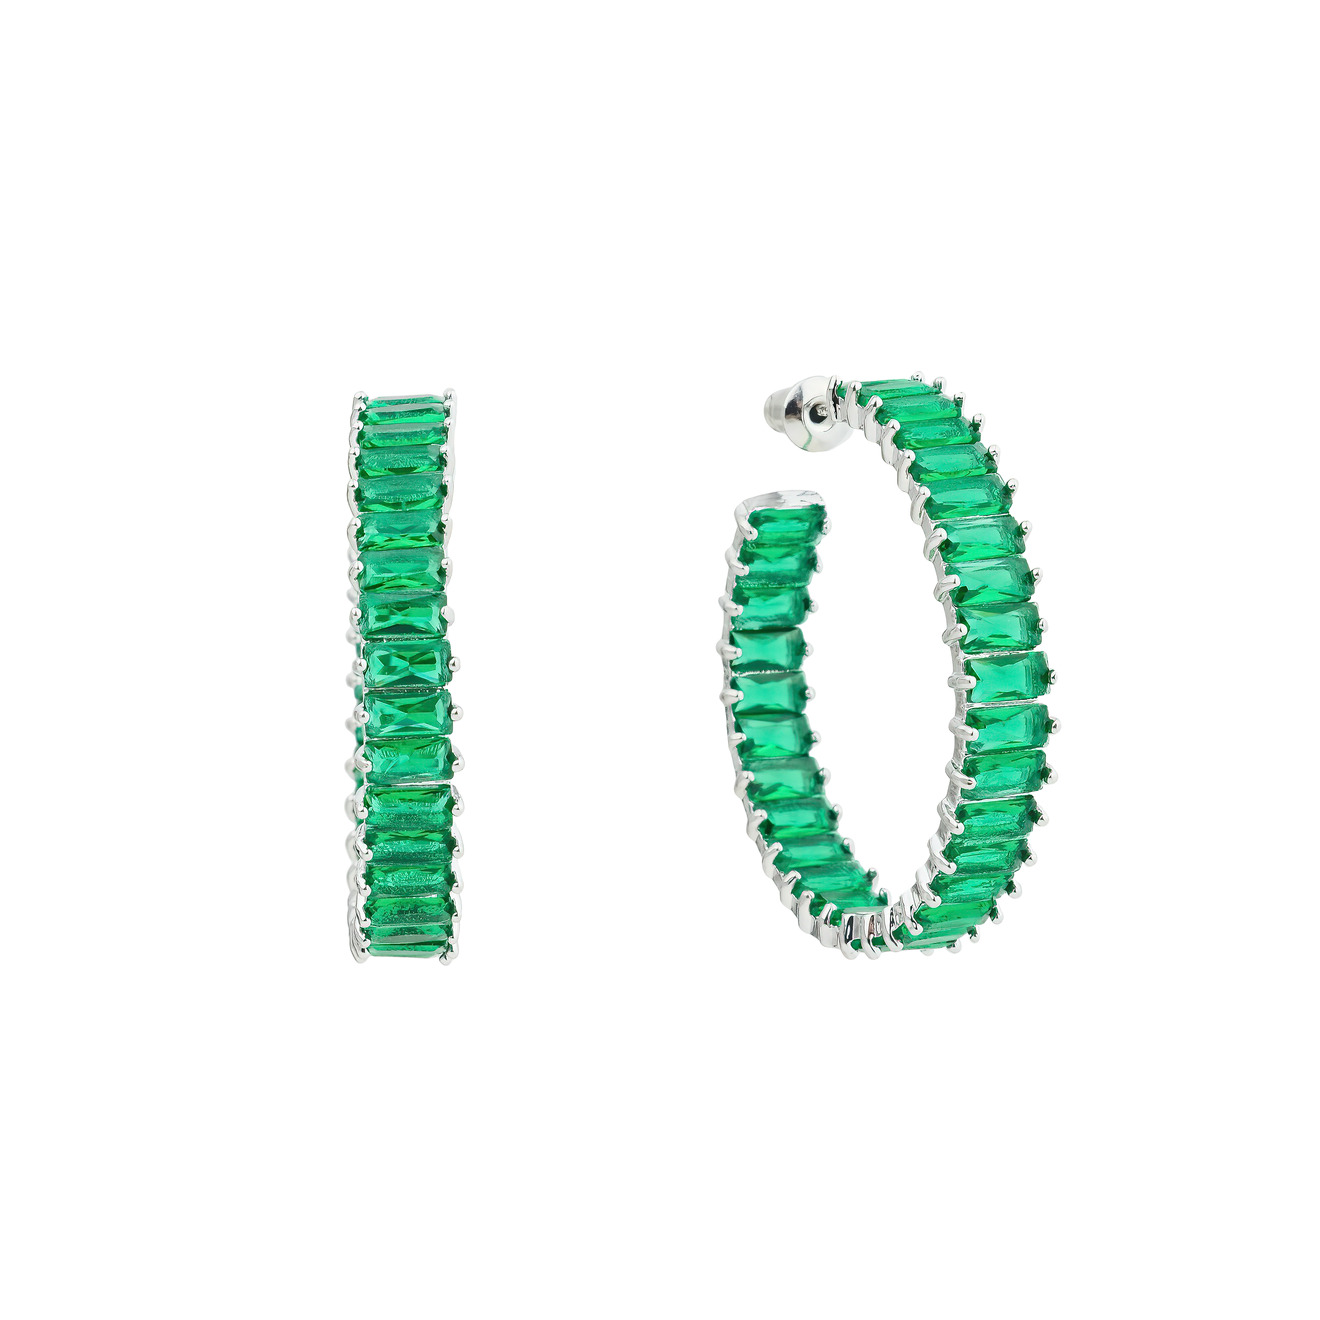 Herald Percy Серьги-кольца с зелеными кристаллами herald percy золотистый кафф с зелеными кристаллами